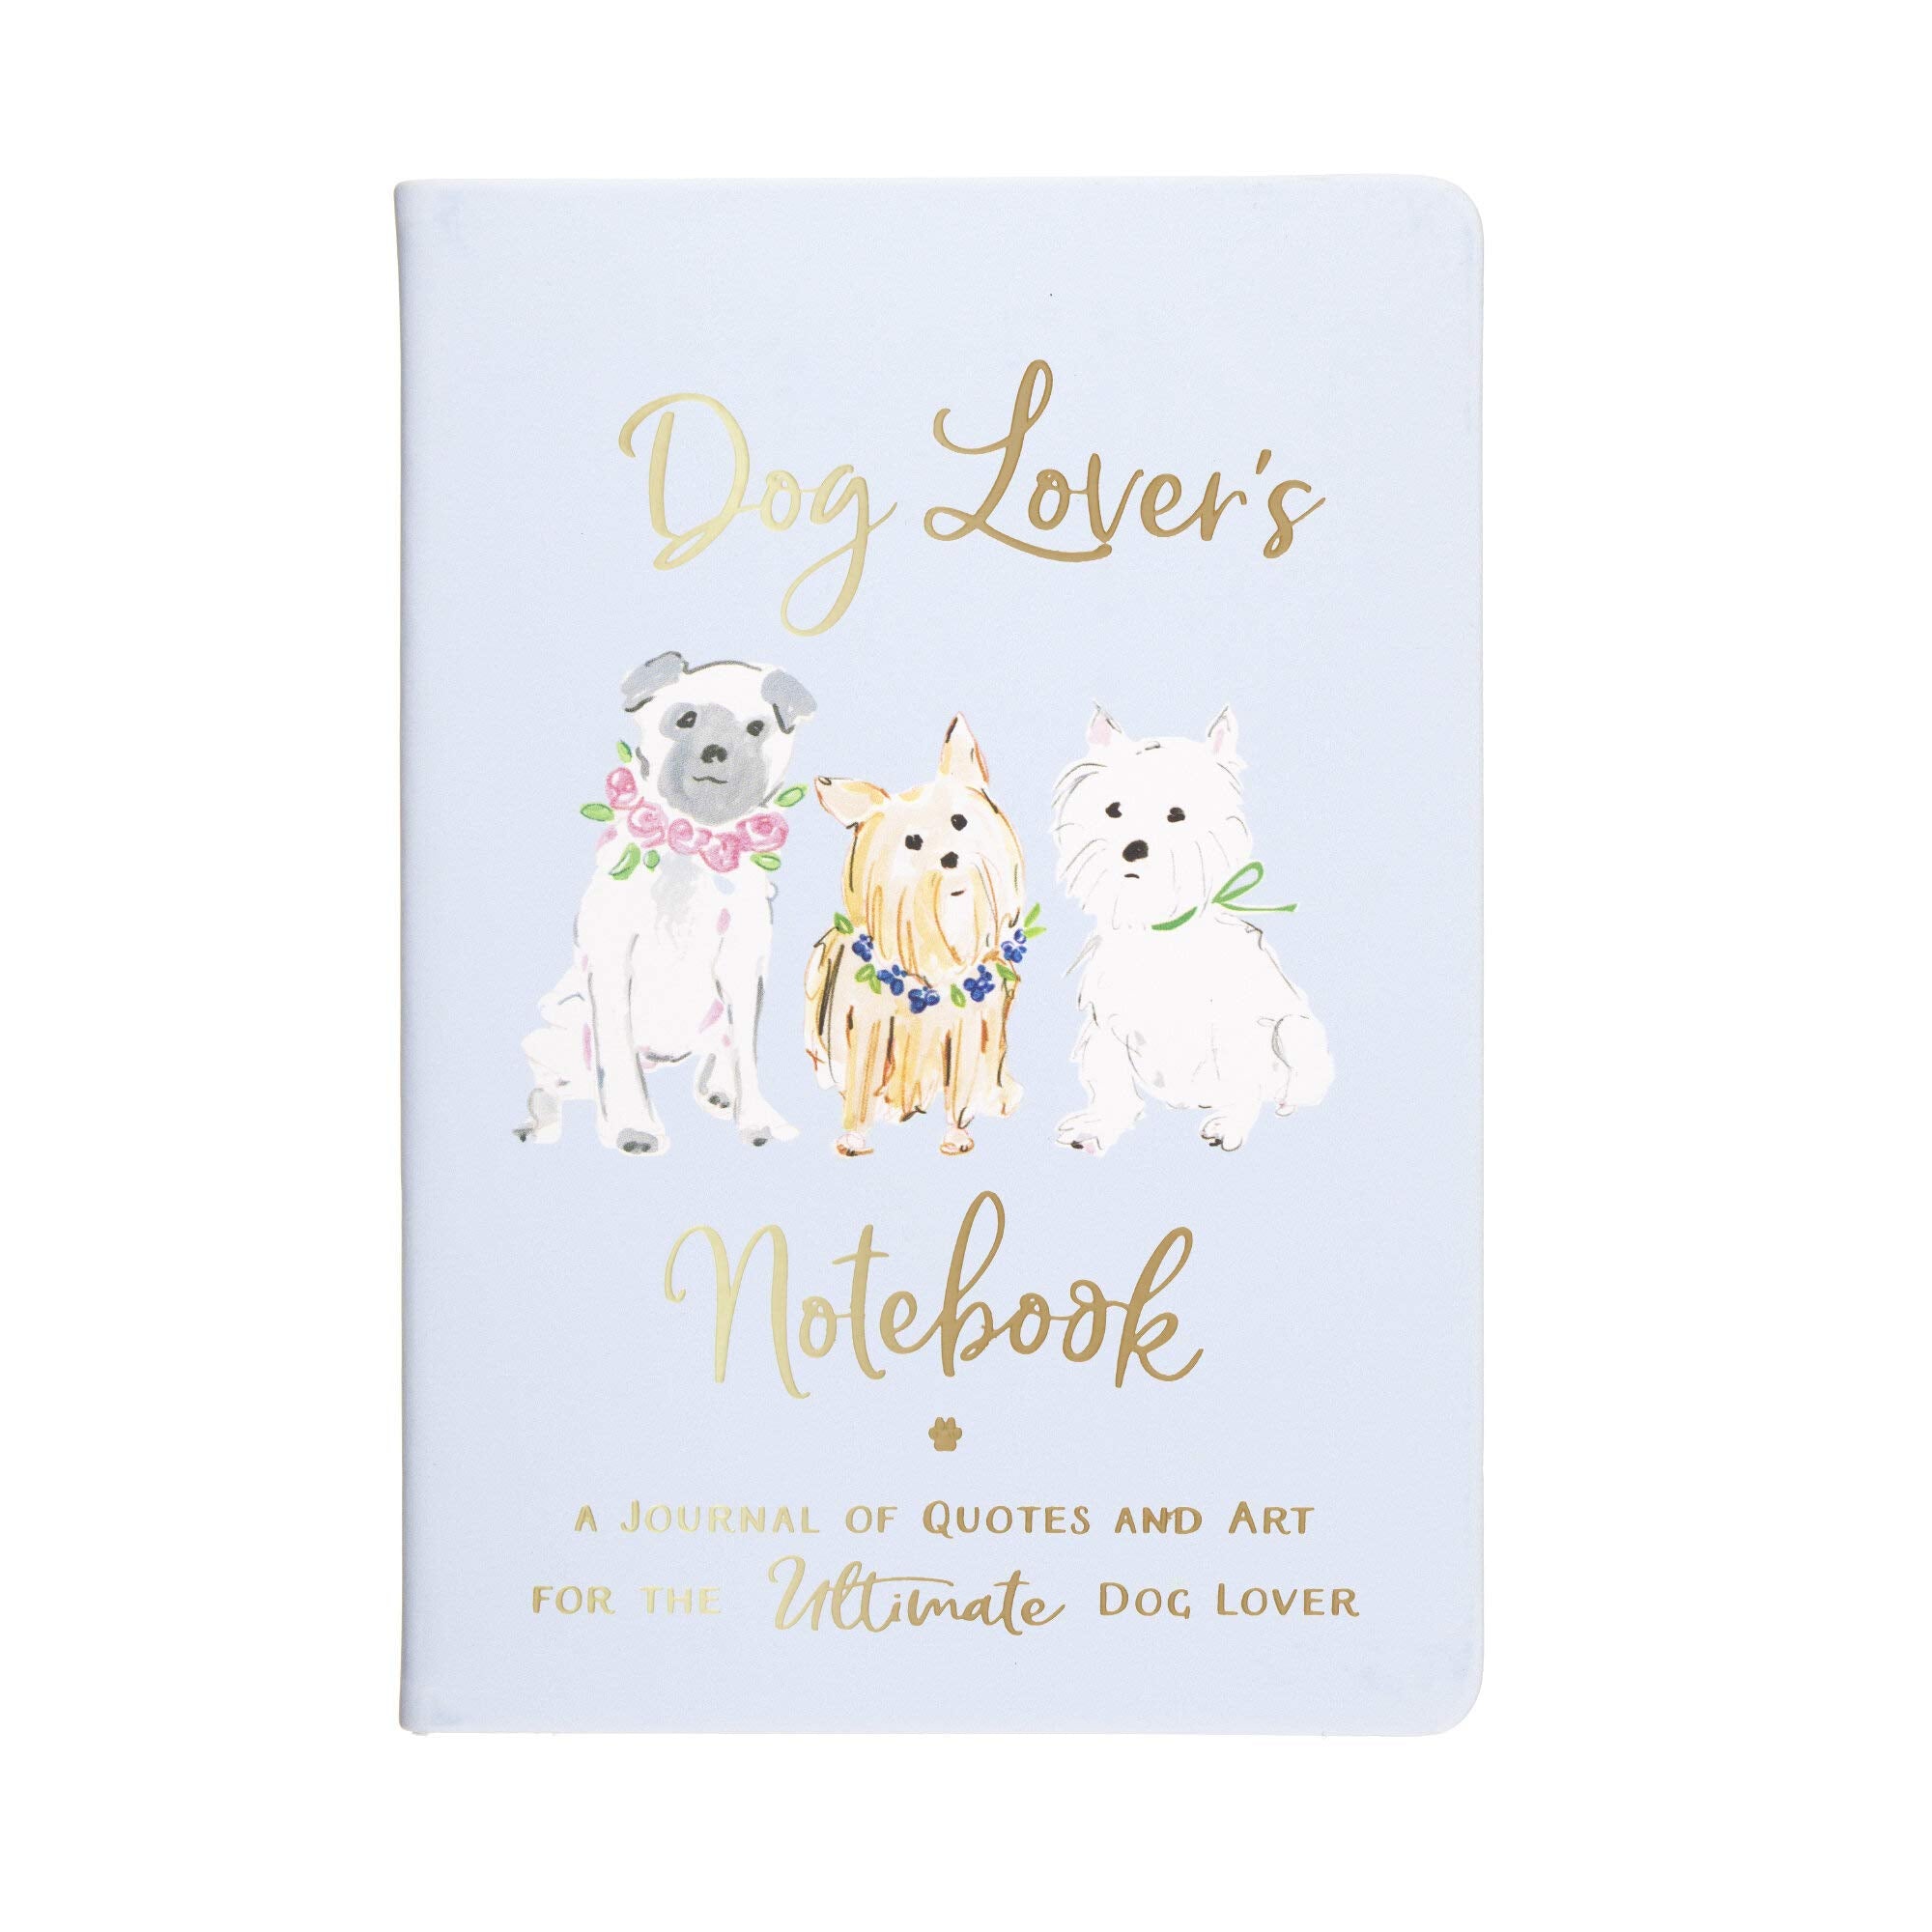 Eccolo World Traveler Dog Lover's Notebook